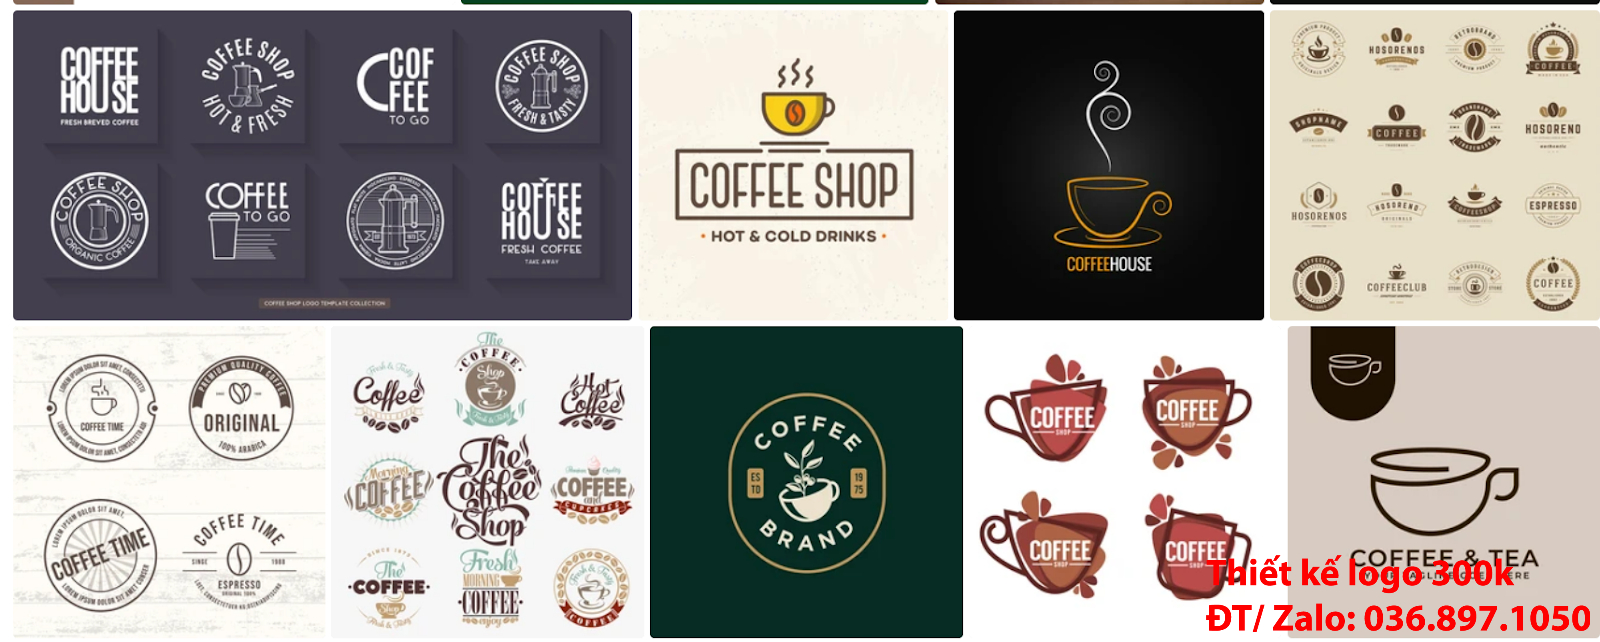 Công ty cung cấp mẫu thiết kế logo cà phê cafe coffee đẹp giá rẻ tại Hà Nội